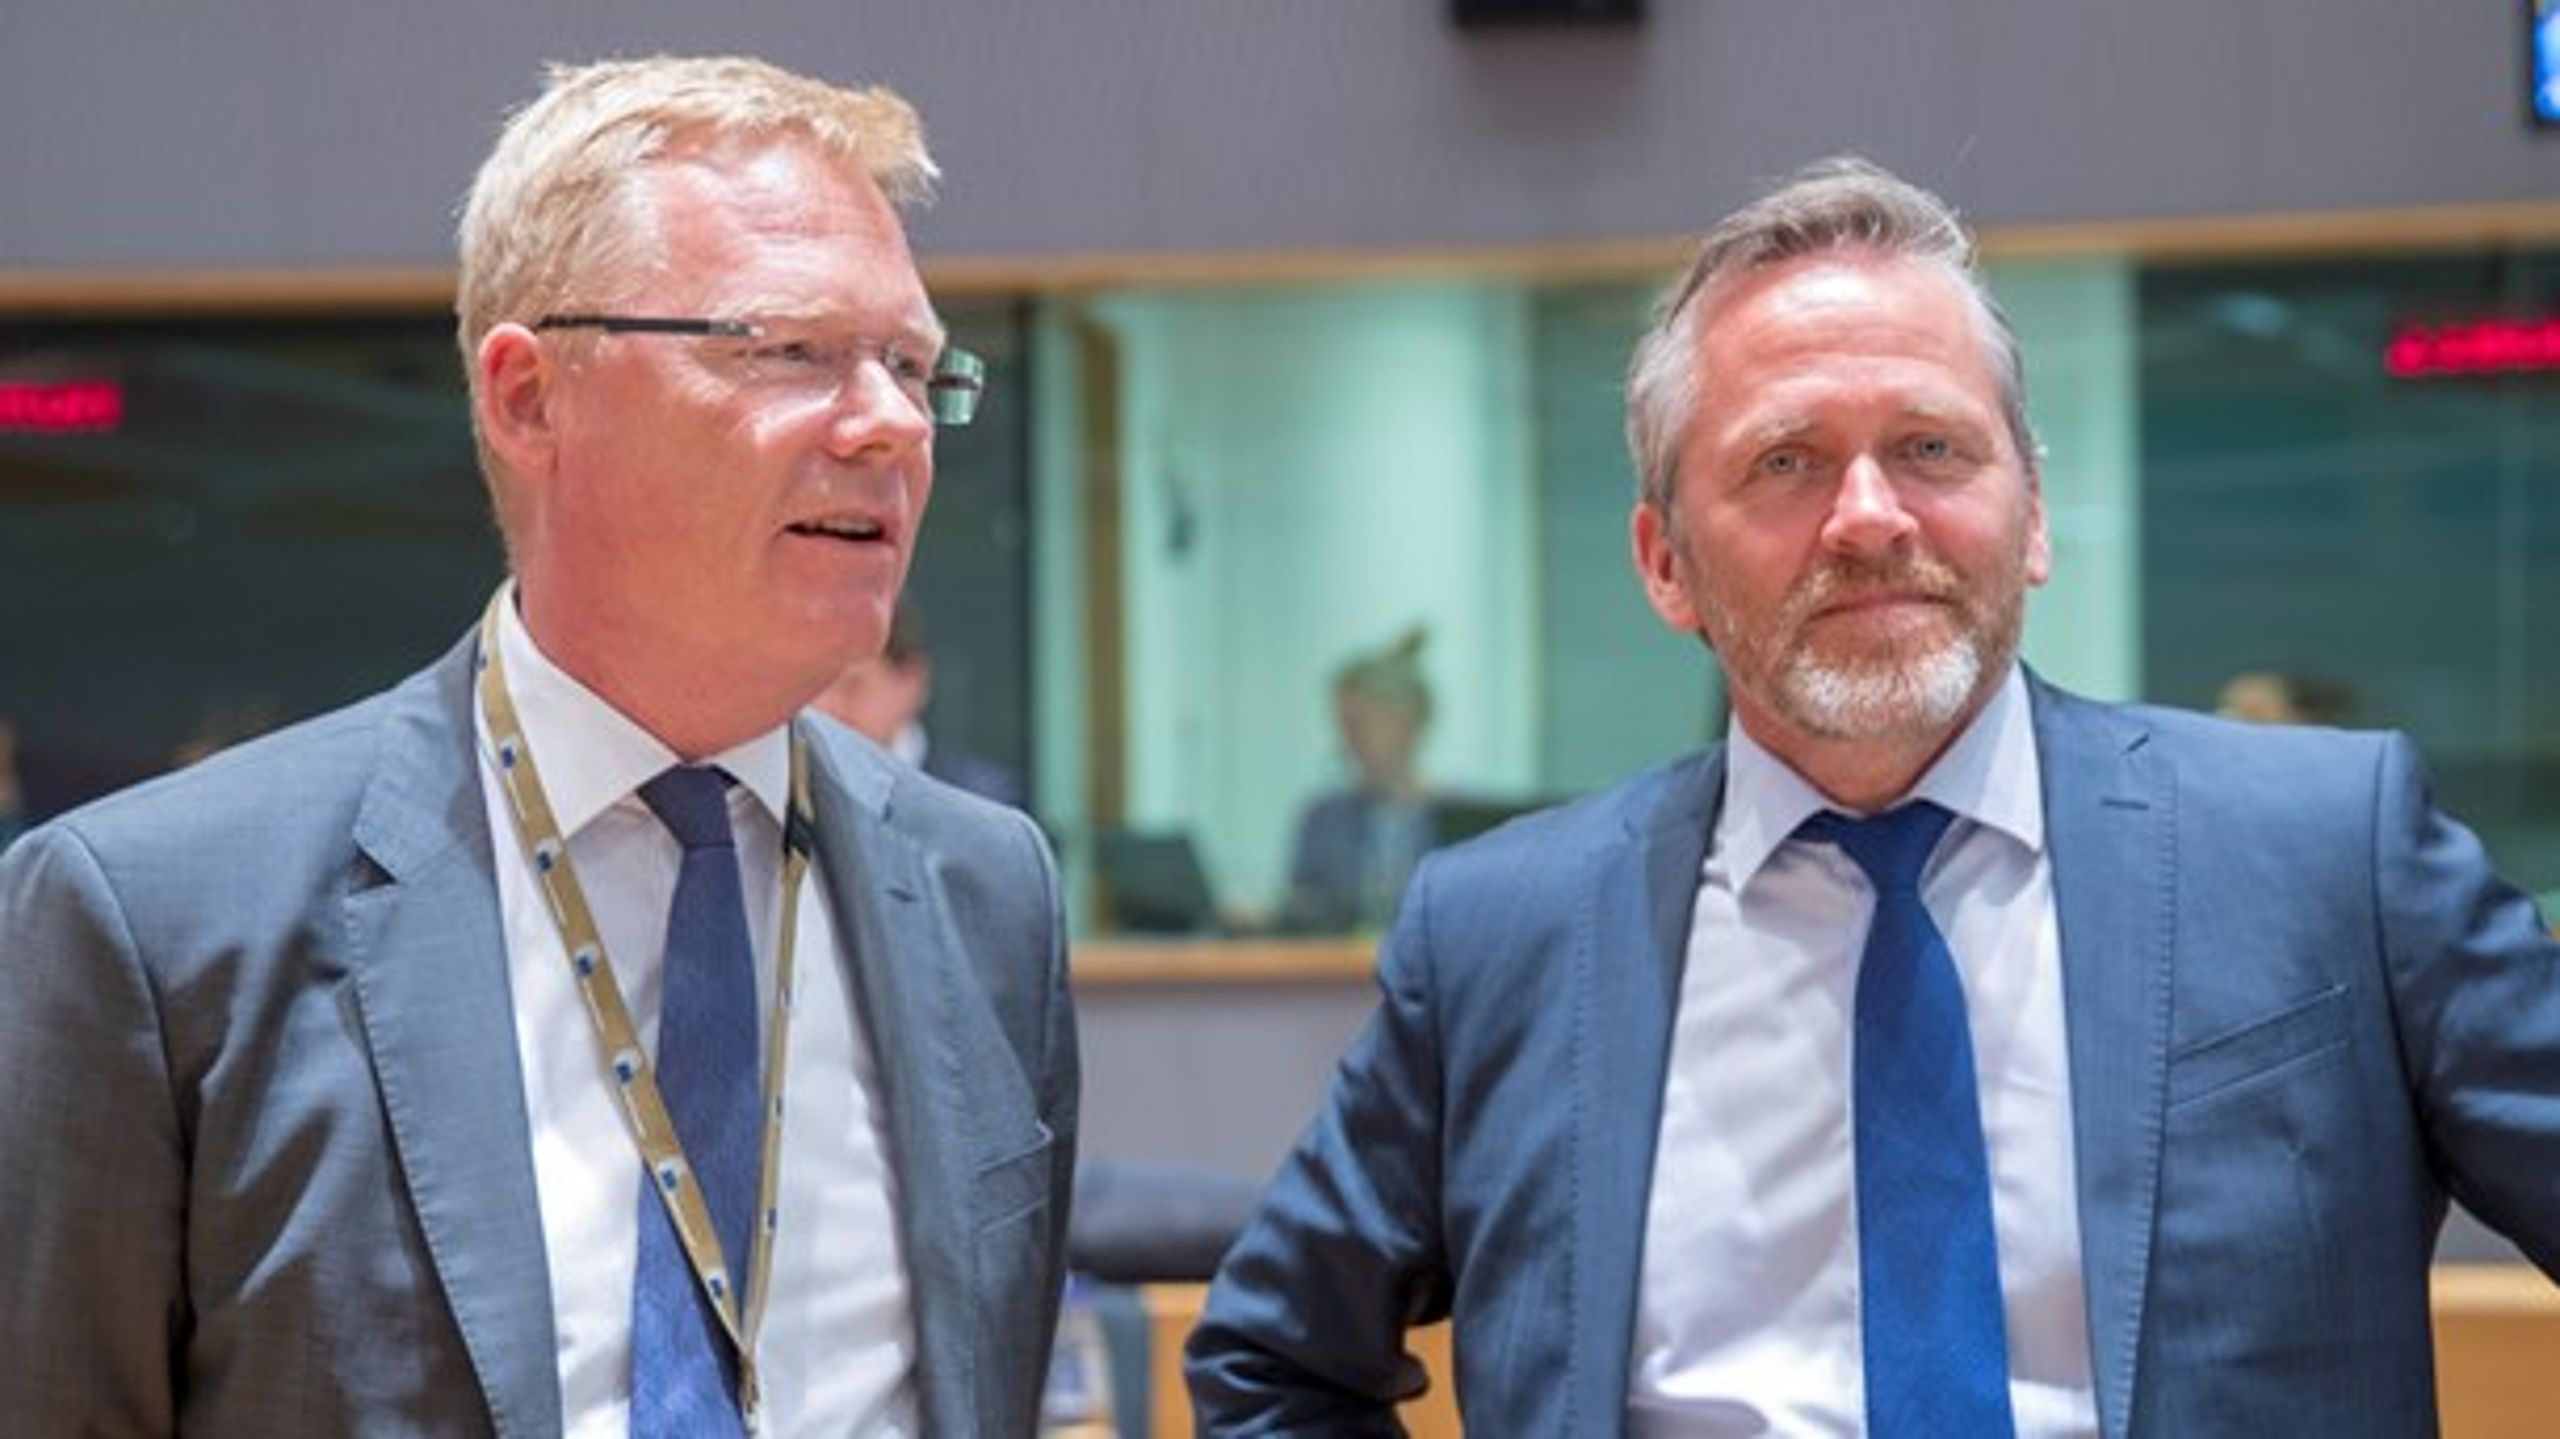 Udenrigsminister Anders Samuelsen (t.h.) har sat Danmarks EU-ambassadør, Kim Jørgensen (t.v.) på en svær opgave med at få overbevist de øvrige EU-lande om, at Unionens medlemskontingent ikke skal stige efter Brexit.